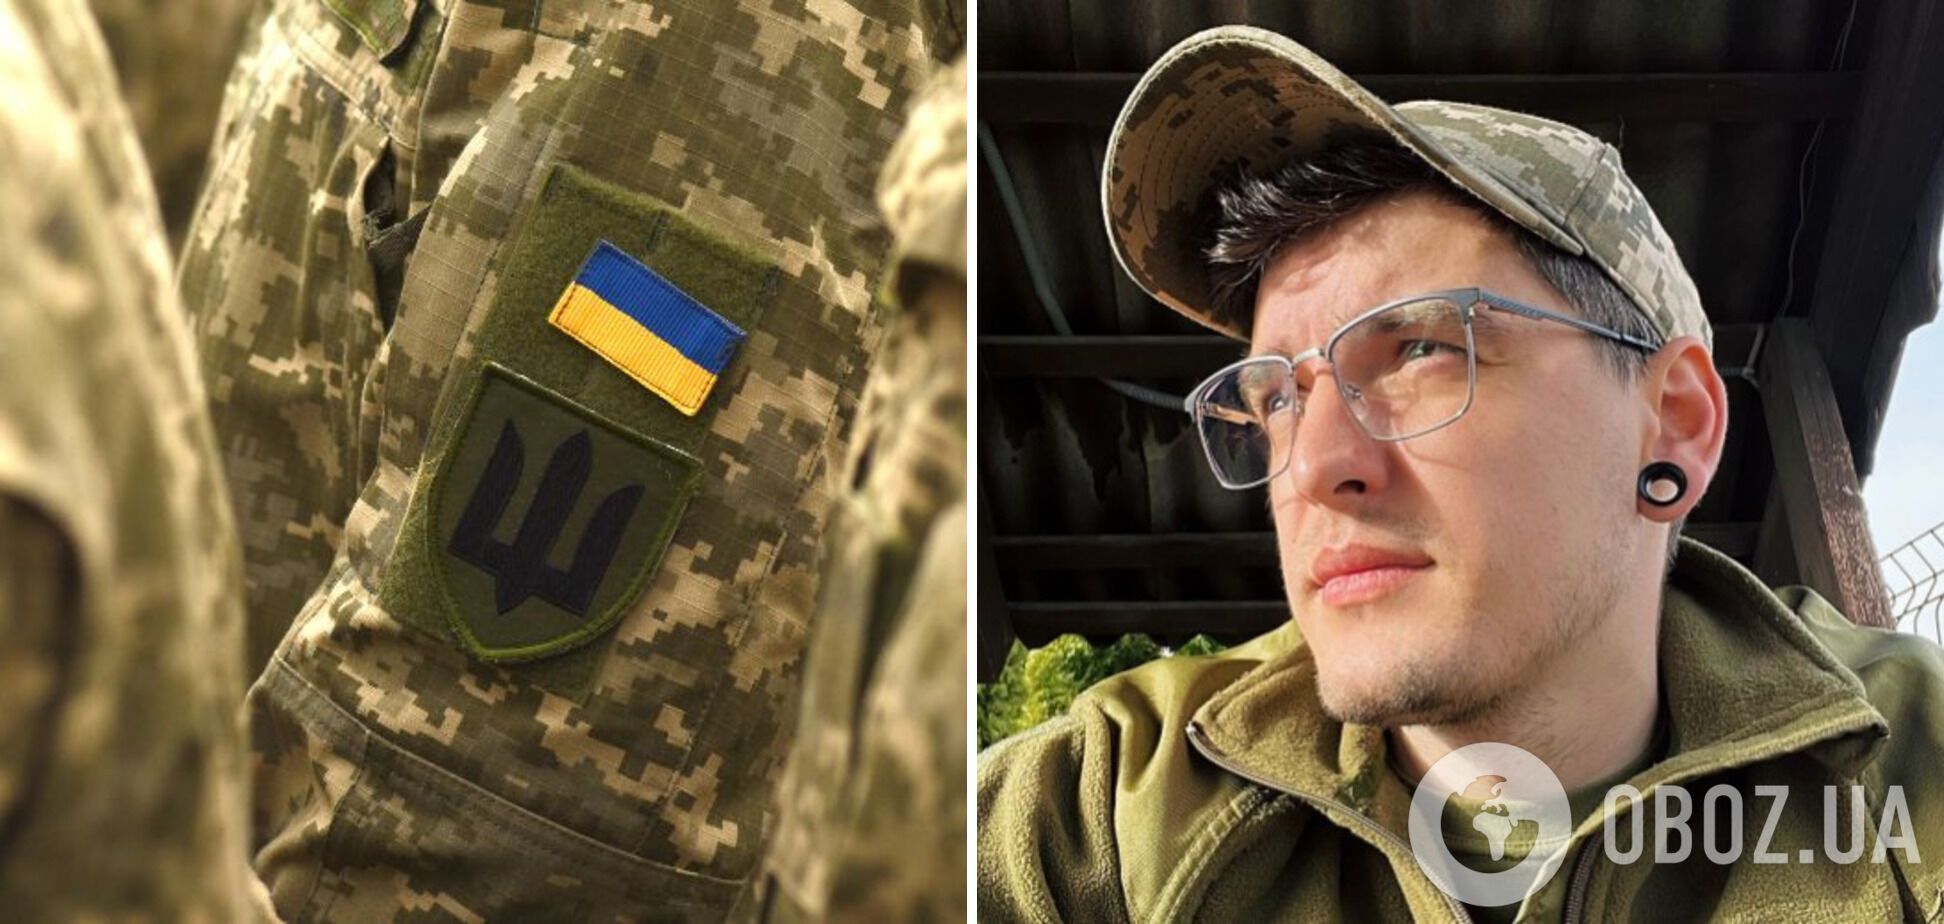 'Якщо не готові йти до війська – допомагайте': популярний український відеоблогер приєднався до лав ЗСУ
